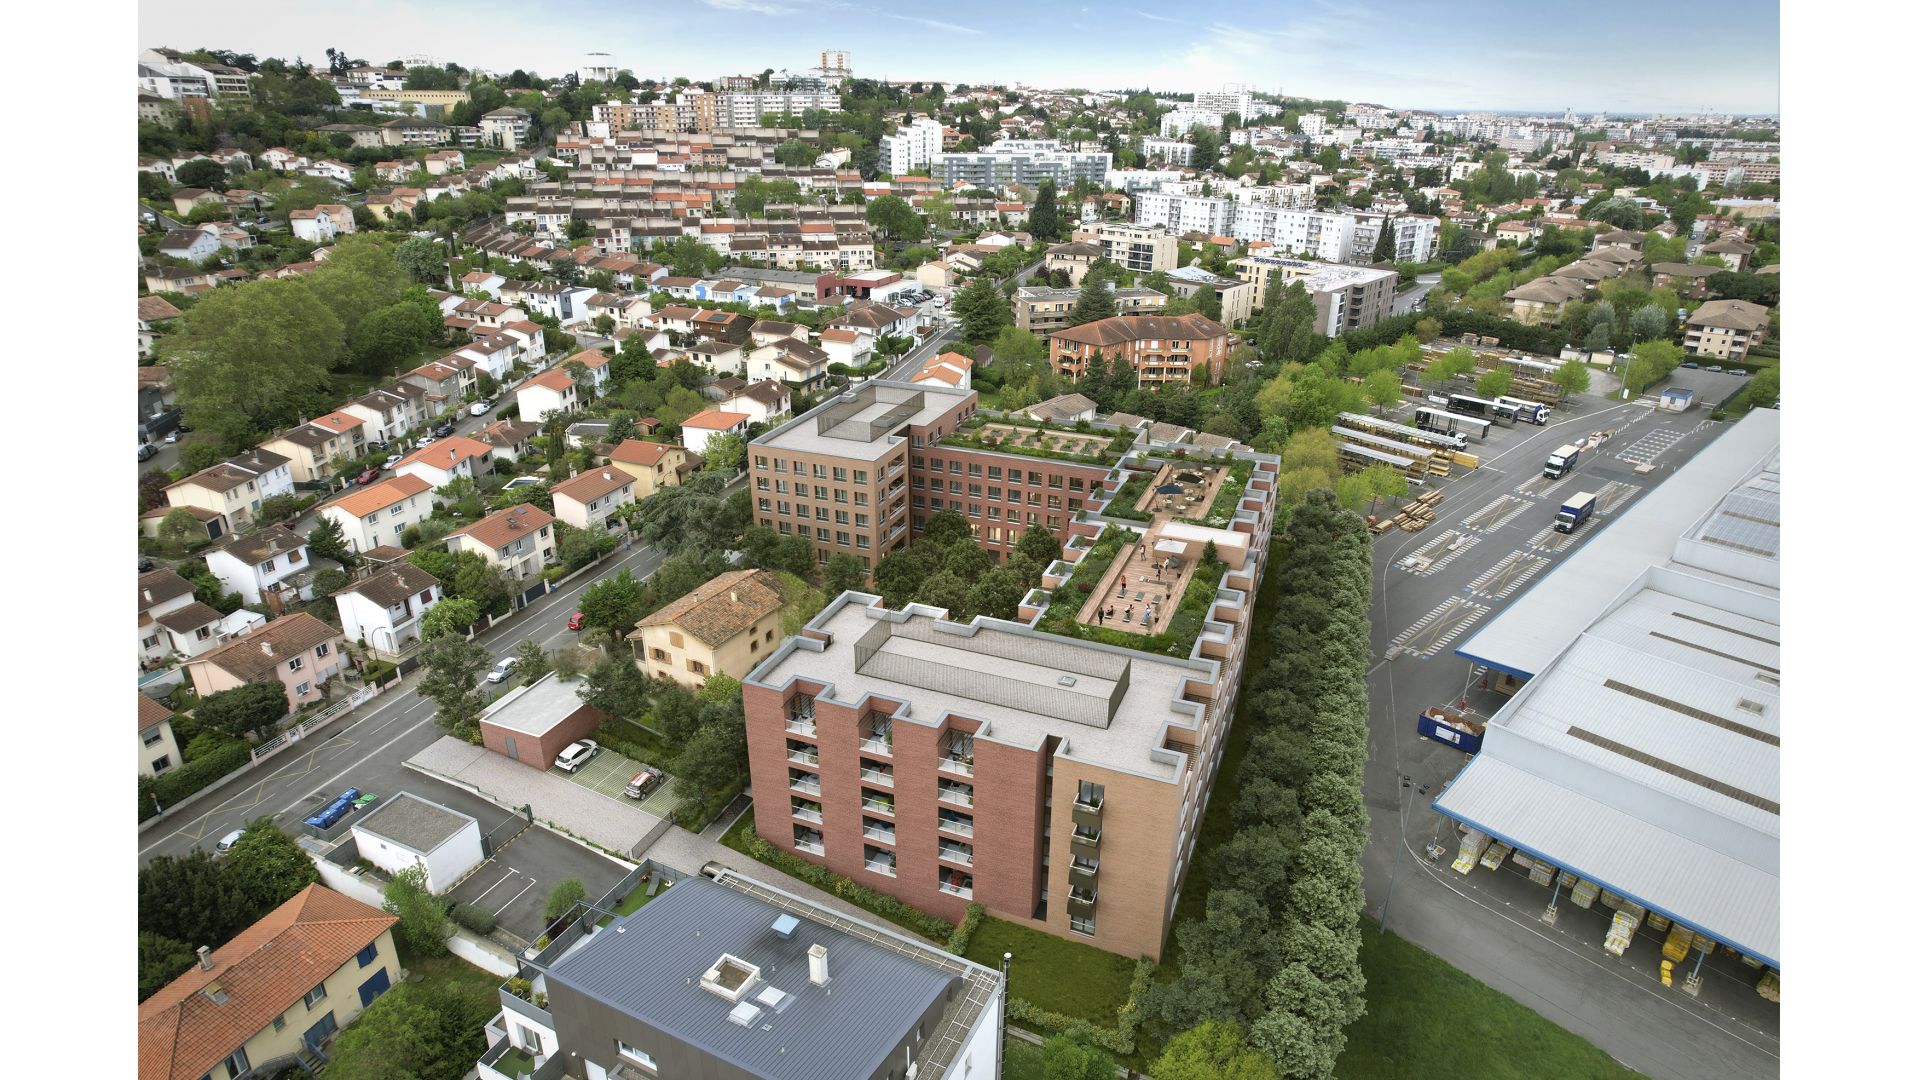 Greencity immobilier - achat appartements neufs du T1 au T5 - Résidence Séniors et Résidence co-living - Résidence Melty Home - 31500 Toulouse  